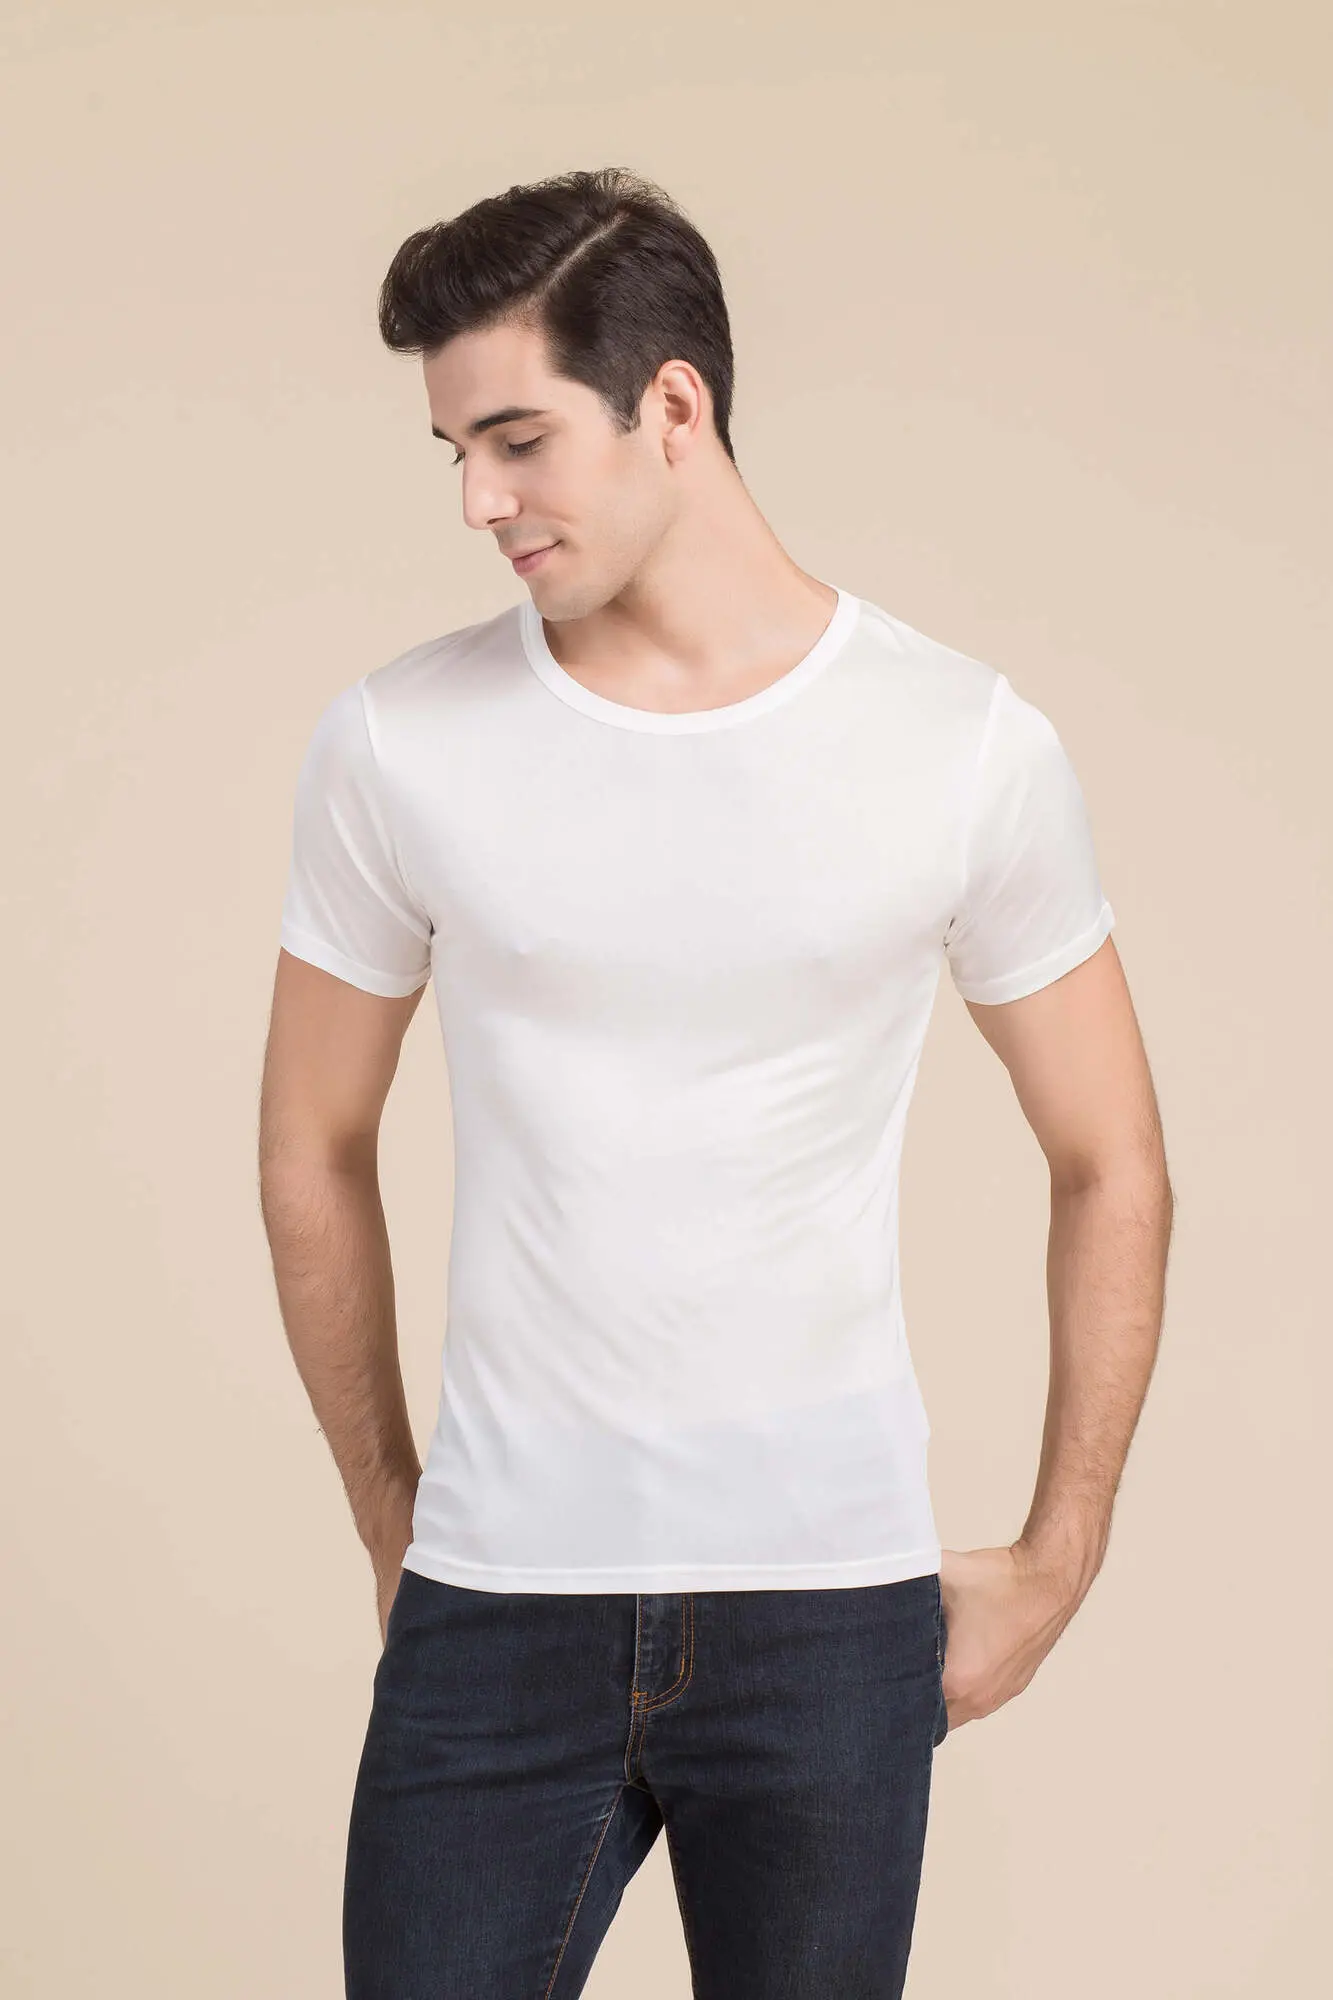 fokus oplukker Tredive silke t-shirt hvid unisex - Køb online, stort udvalg